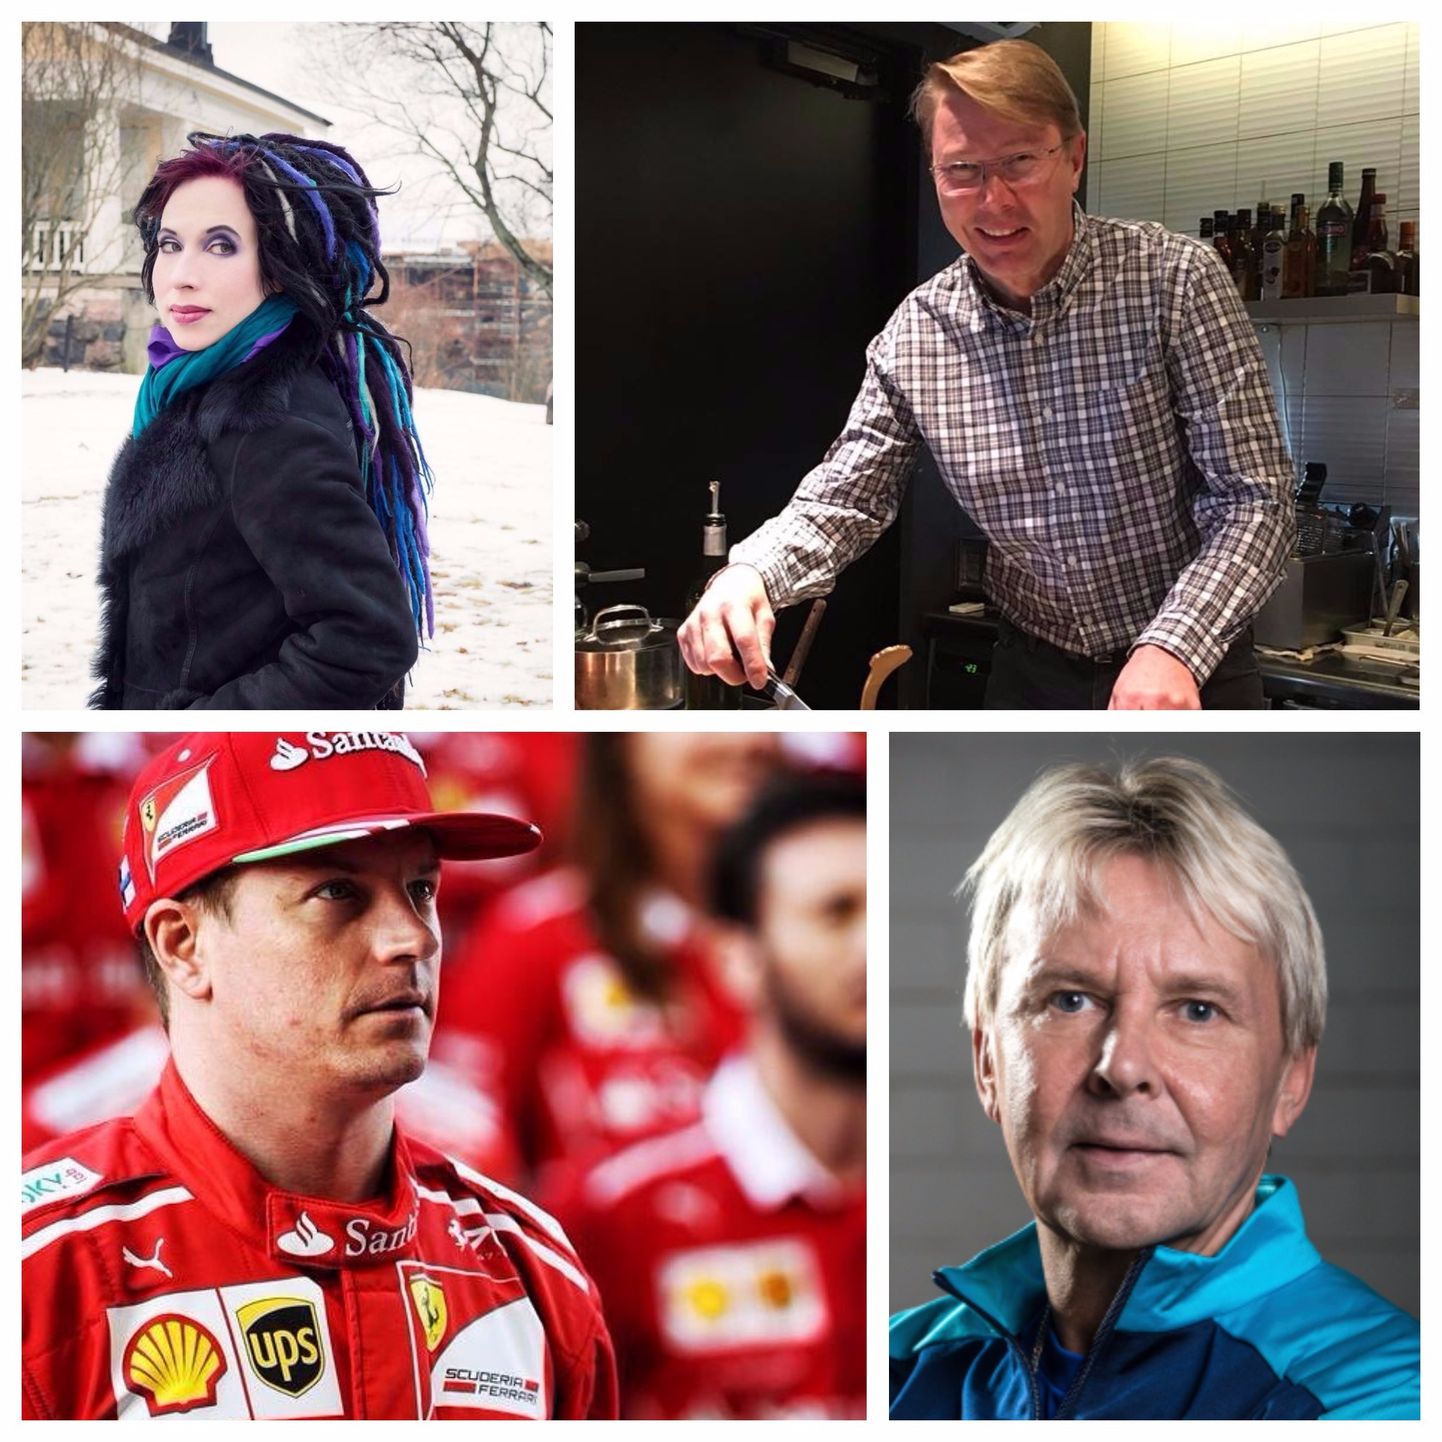 Mika Häkkinen, Sofi Oksanen, Matti Nykänen, Kimi Räikkonen